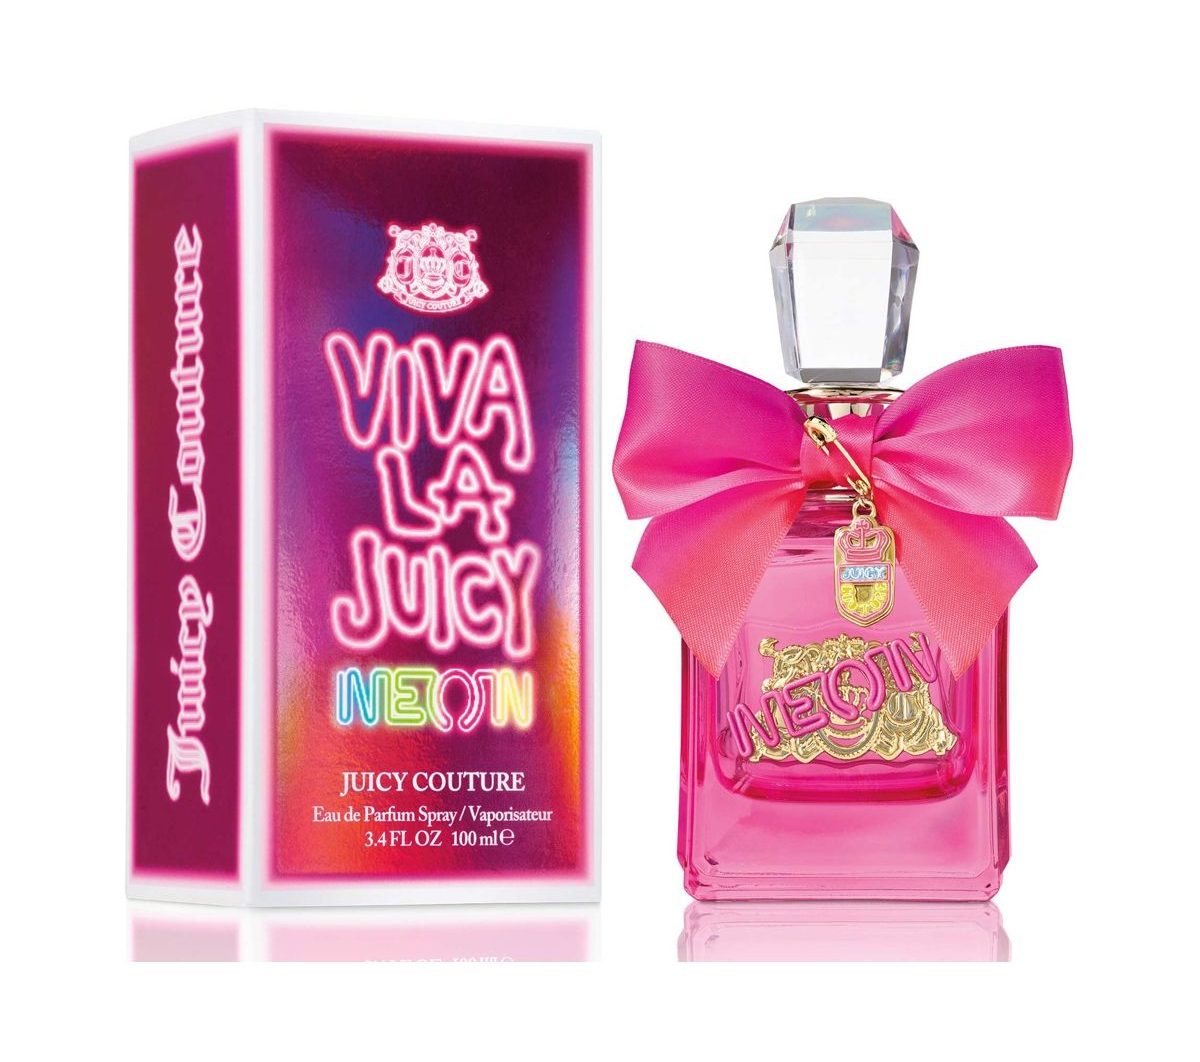 Juicy Couture Viva La Juicy Neon For Women Eau De Parfum 100ml at Ratans Online Shop - Perfumes Wholesale and Retailer Fragrance